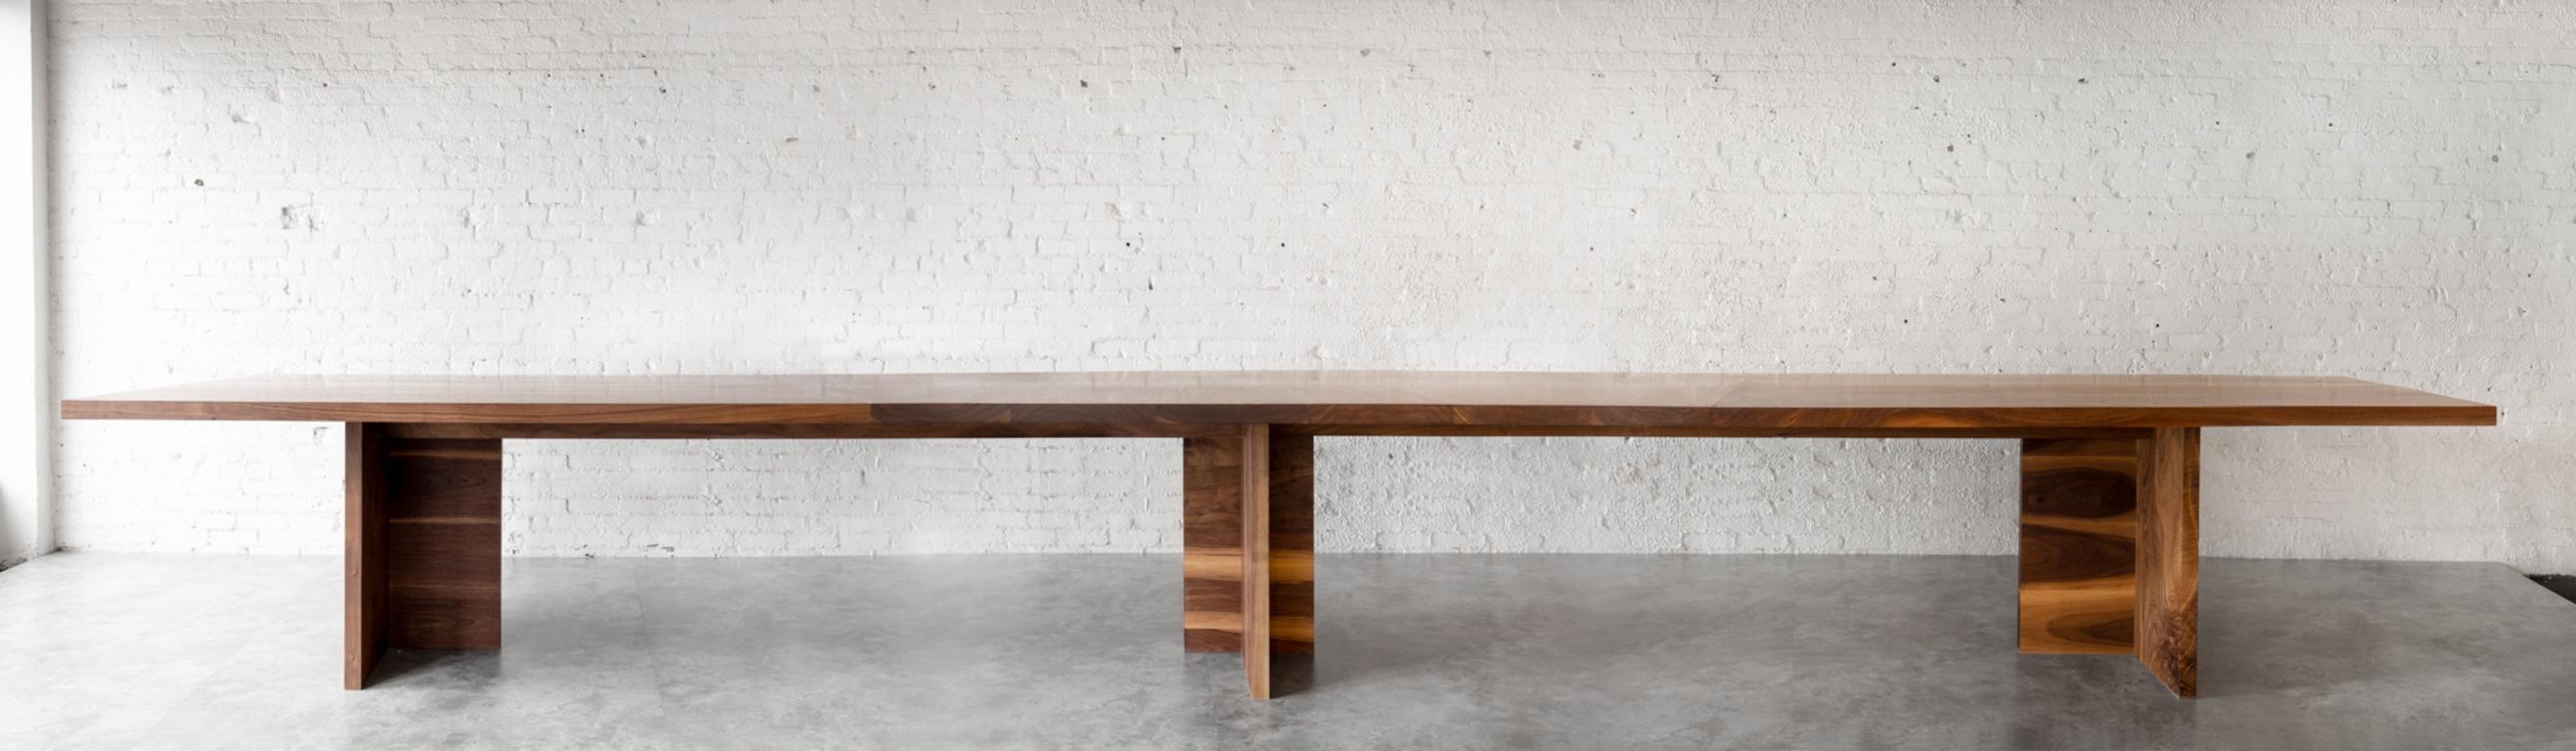 Erhöhen Sie Ihren Büroraum mit dem Georgia Walnut Boardroom Table von Autonomous Furniture - ein Höhepunkt an Raffinesse und Eleganz. Dieser robuste und luxuriöse Tisch aus massivem schwarzem Nussbaumholz strahlt zeitlosen Charme aus und fördert